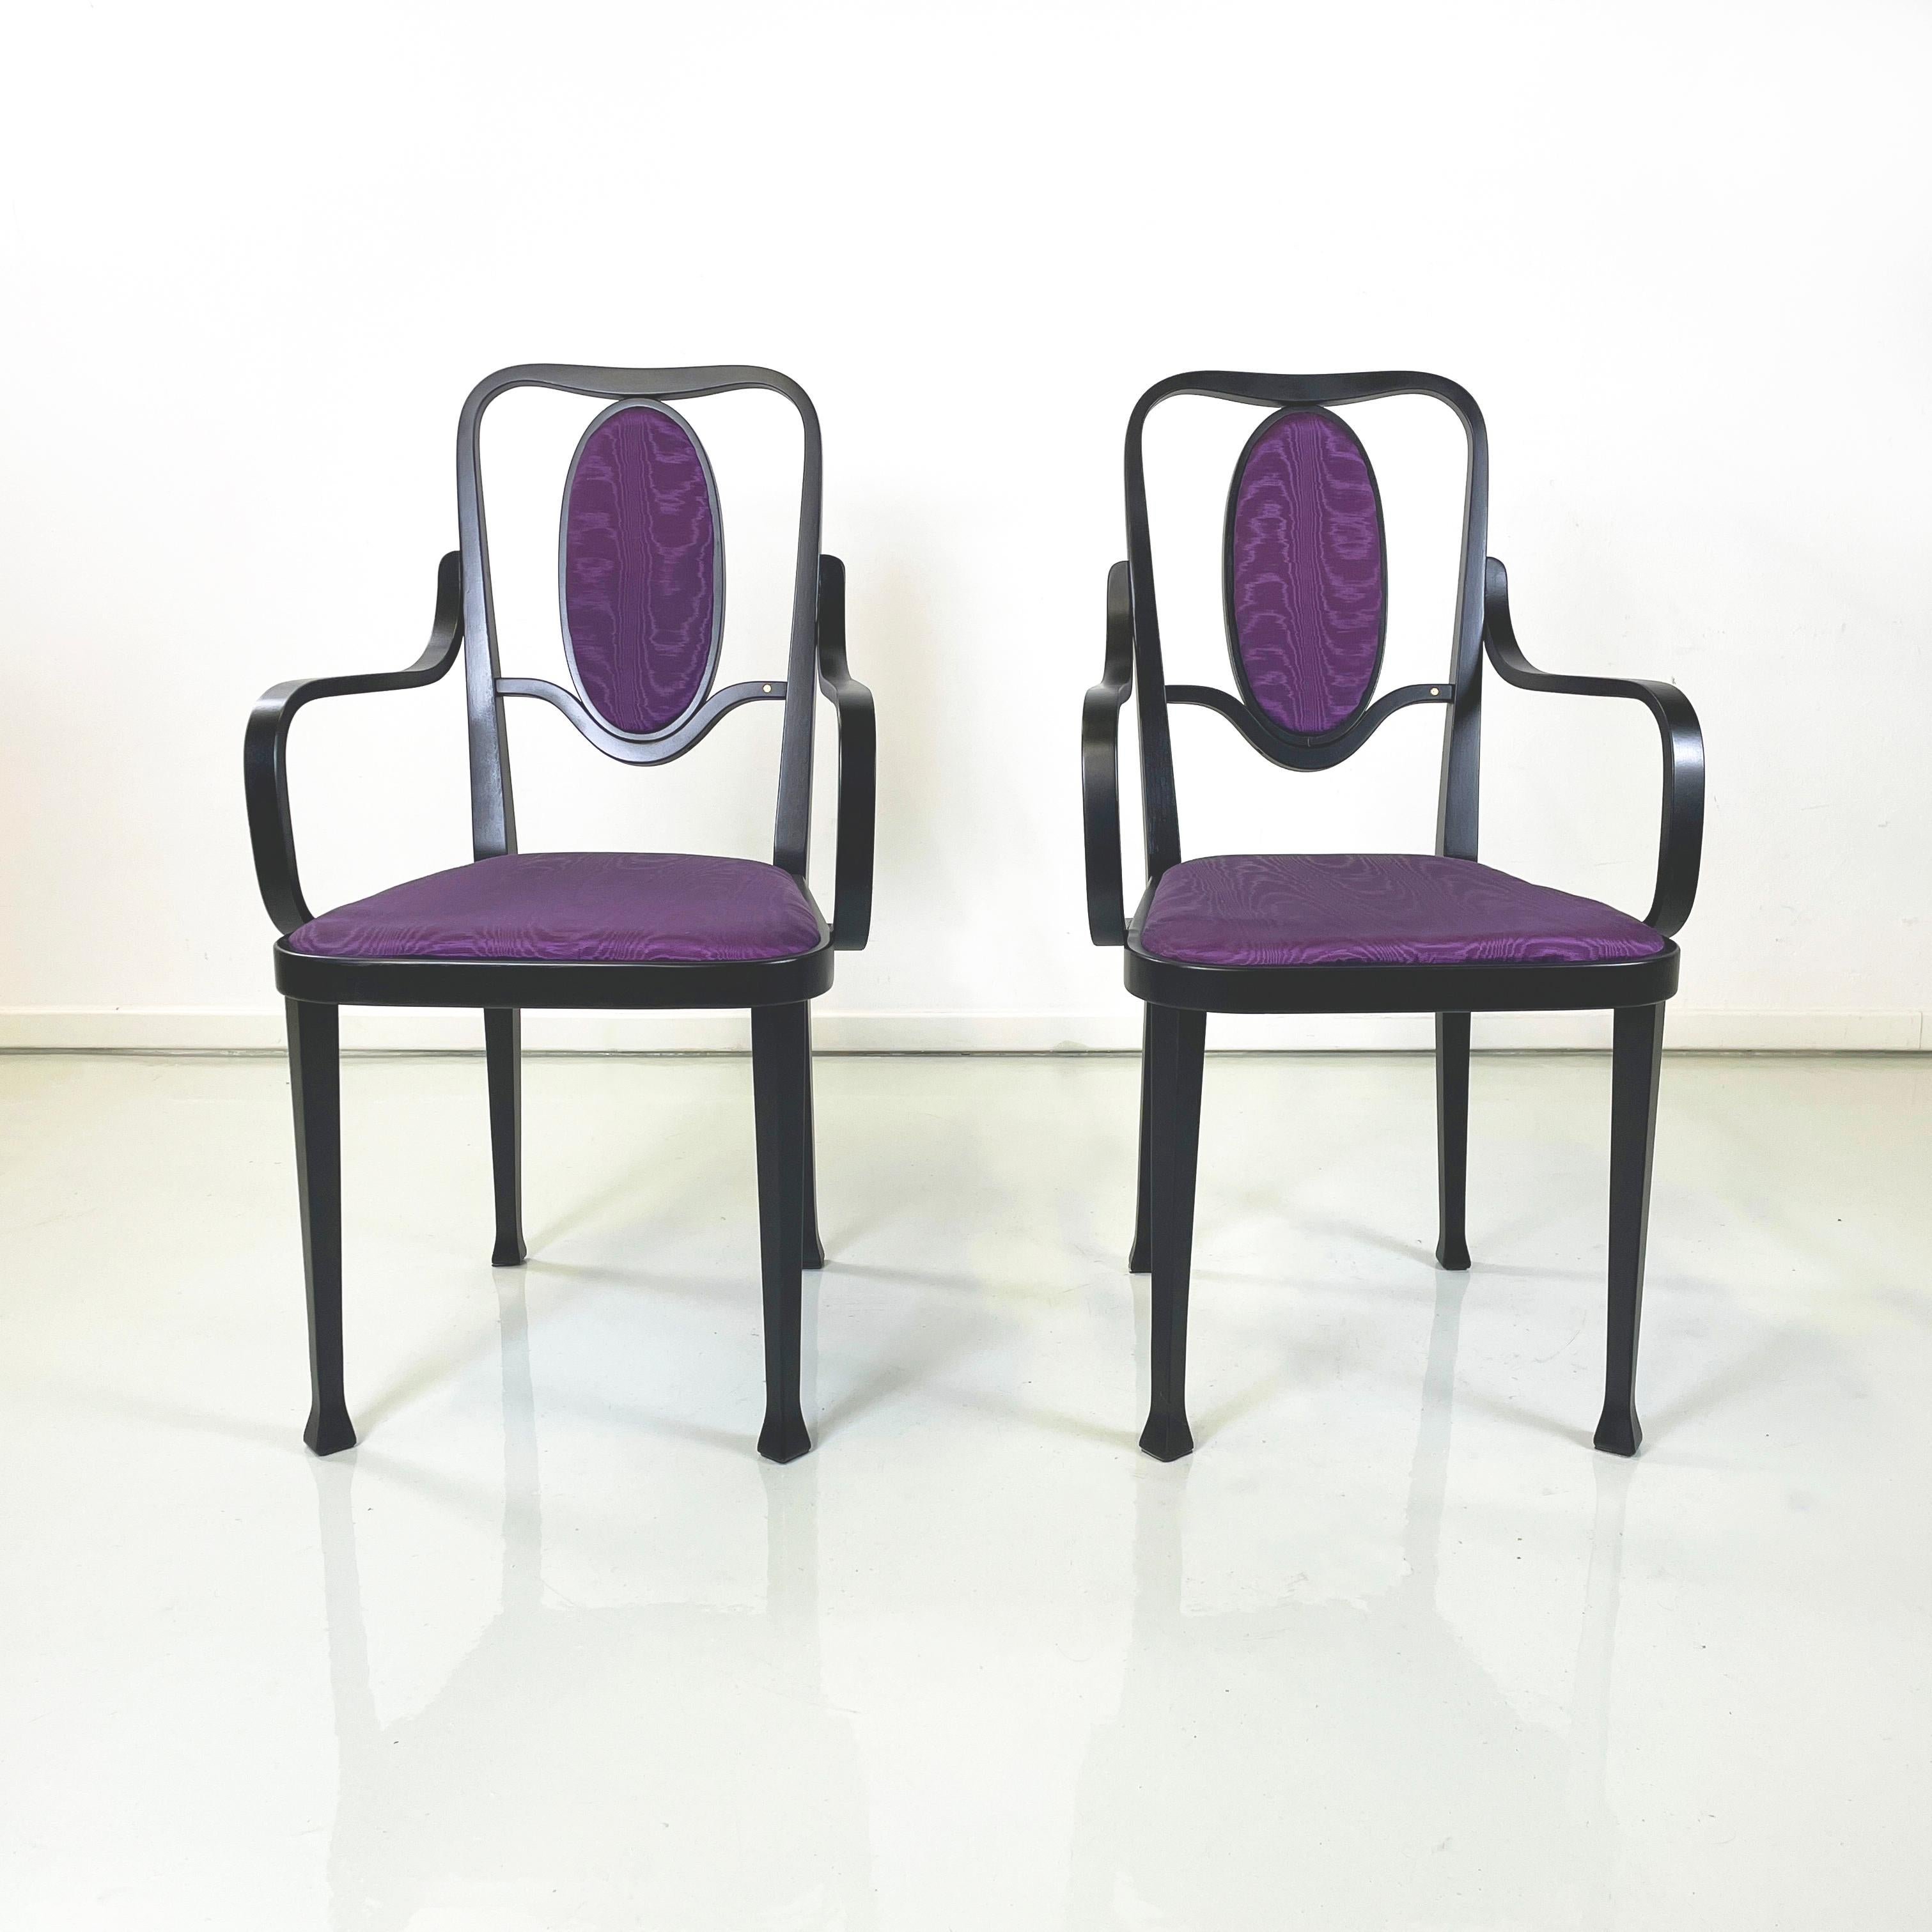 Österreichische moderne Stühle in schwarzem Holz lila Stoff von Marcel Kammerer für Thonet, 1990er Jahre
Stuhlpaar mit quadratischer Sitzfläche und ovaler Rückenlehne, gepolstert und bezogen mit hellviolettem Seidenstoff. Die Struktur besteht